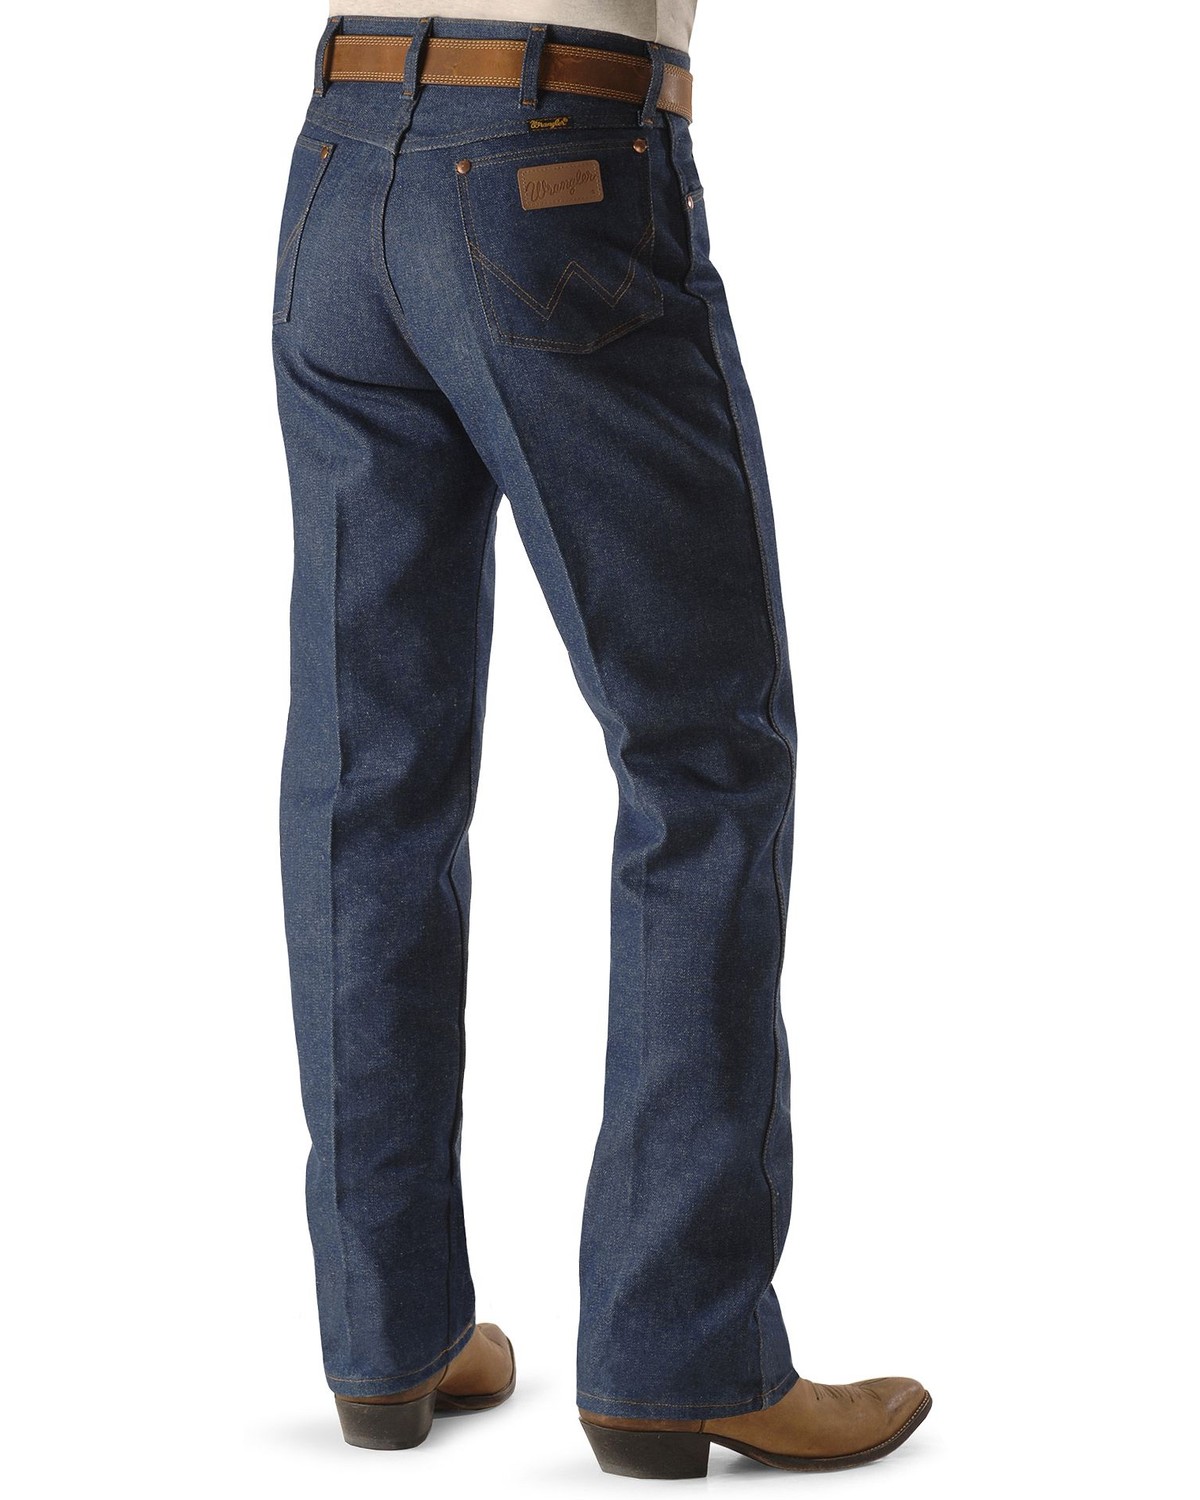 Wrangler 13MWZ Cowboy Cut Rigid Original Fit Jeans - 38